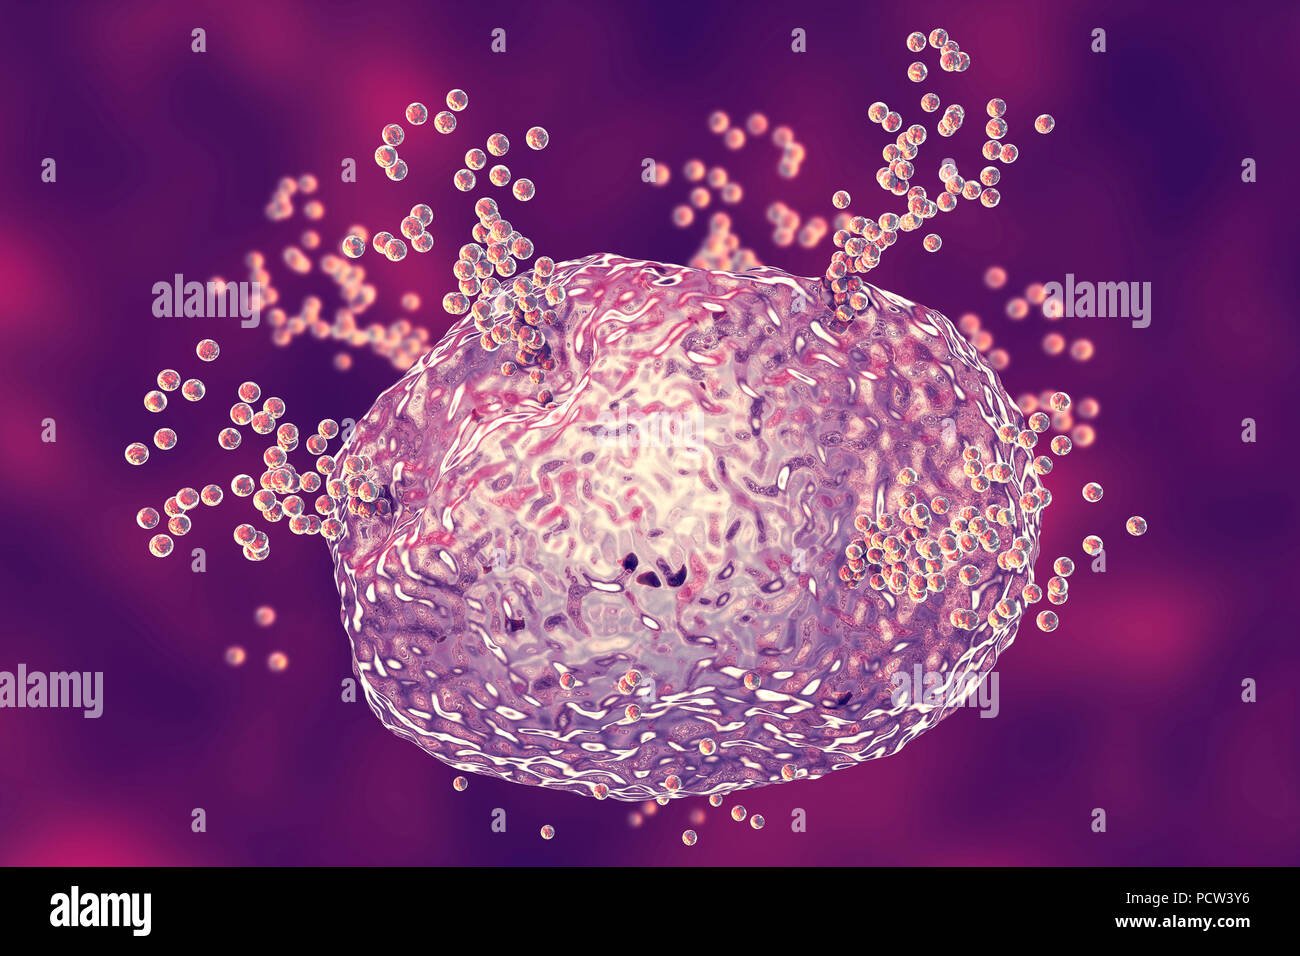 Los mastocitos liberan histamina durante una respuesta alérgica,ordenador ilustración.Los mastocitos son un tipo de leucocitos (glóbulos blancos).contienen los mediadores químicos histamina, serotonina y heparina.Debido a la liberación de histamina de los mastocitos en respuesta a un alergeno, provocando una respuesta inmune inflamatoria localizada.Cuando un alergeno,las células B (no visto) producen anticuerpos que se unen a moléculas receptoras de proteínas en la superficie de la célula del mástil.Cuando dos anticuerpos están interrelacionados con un antígeno de la célula se activa para su liberación de histamina por exocitosis. Foto de stock